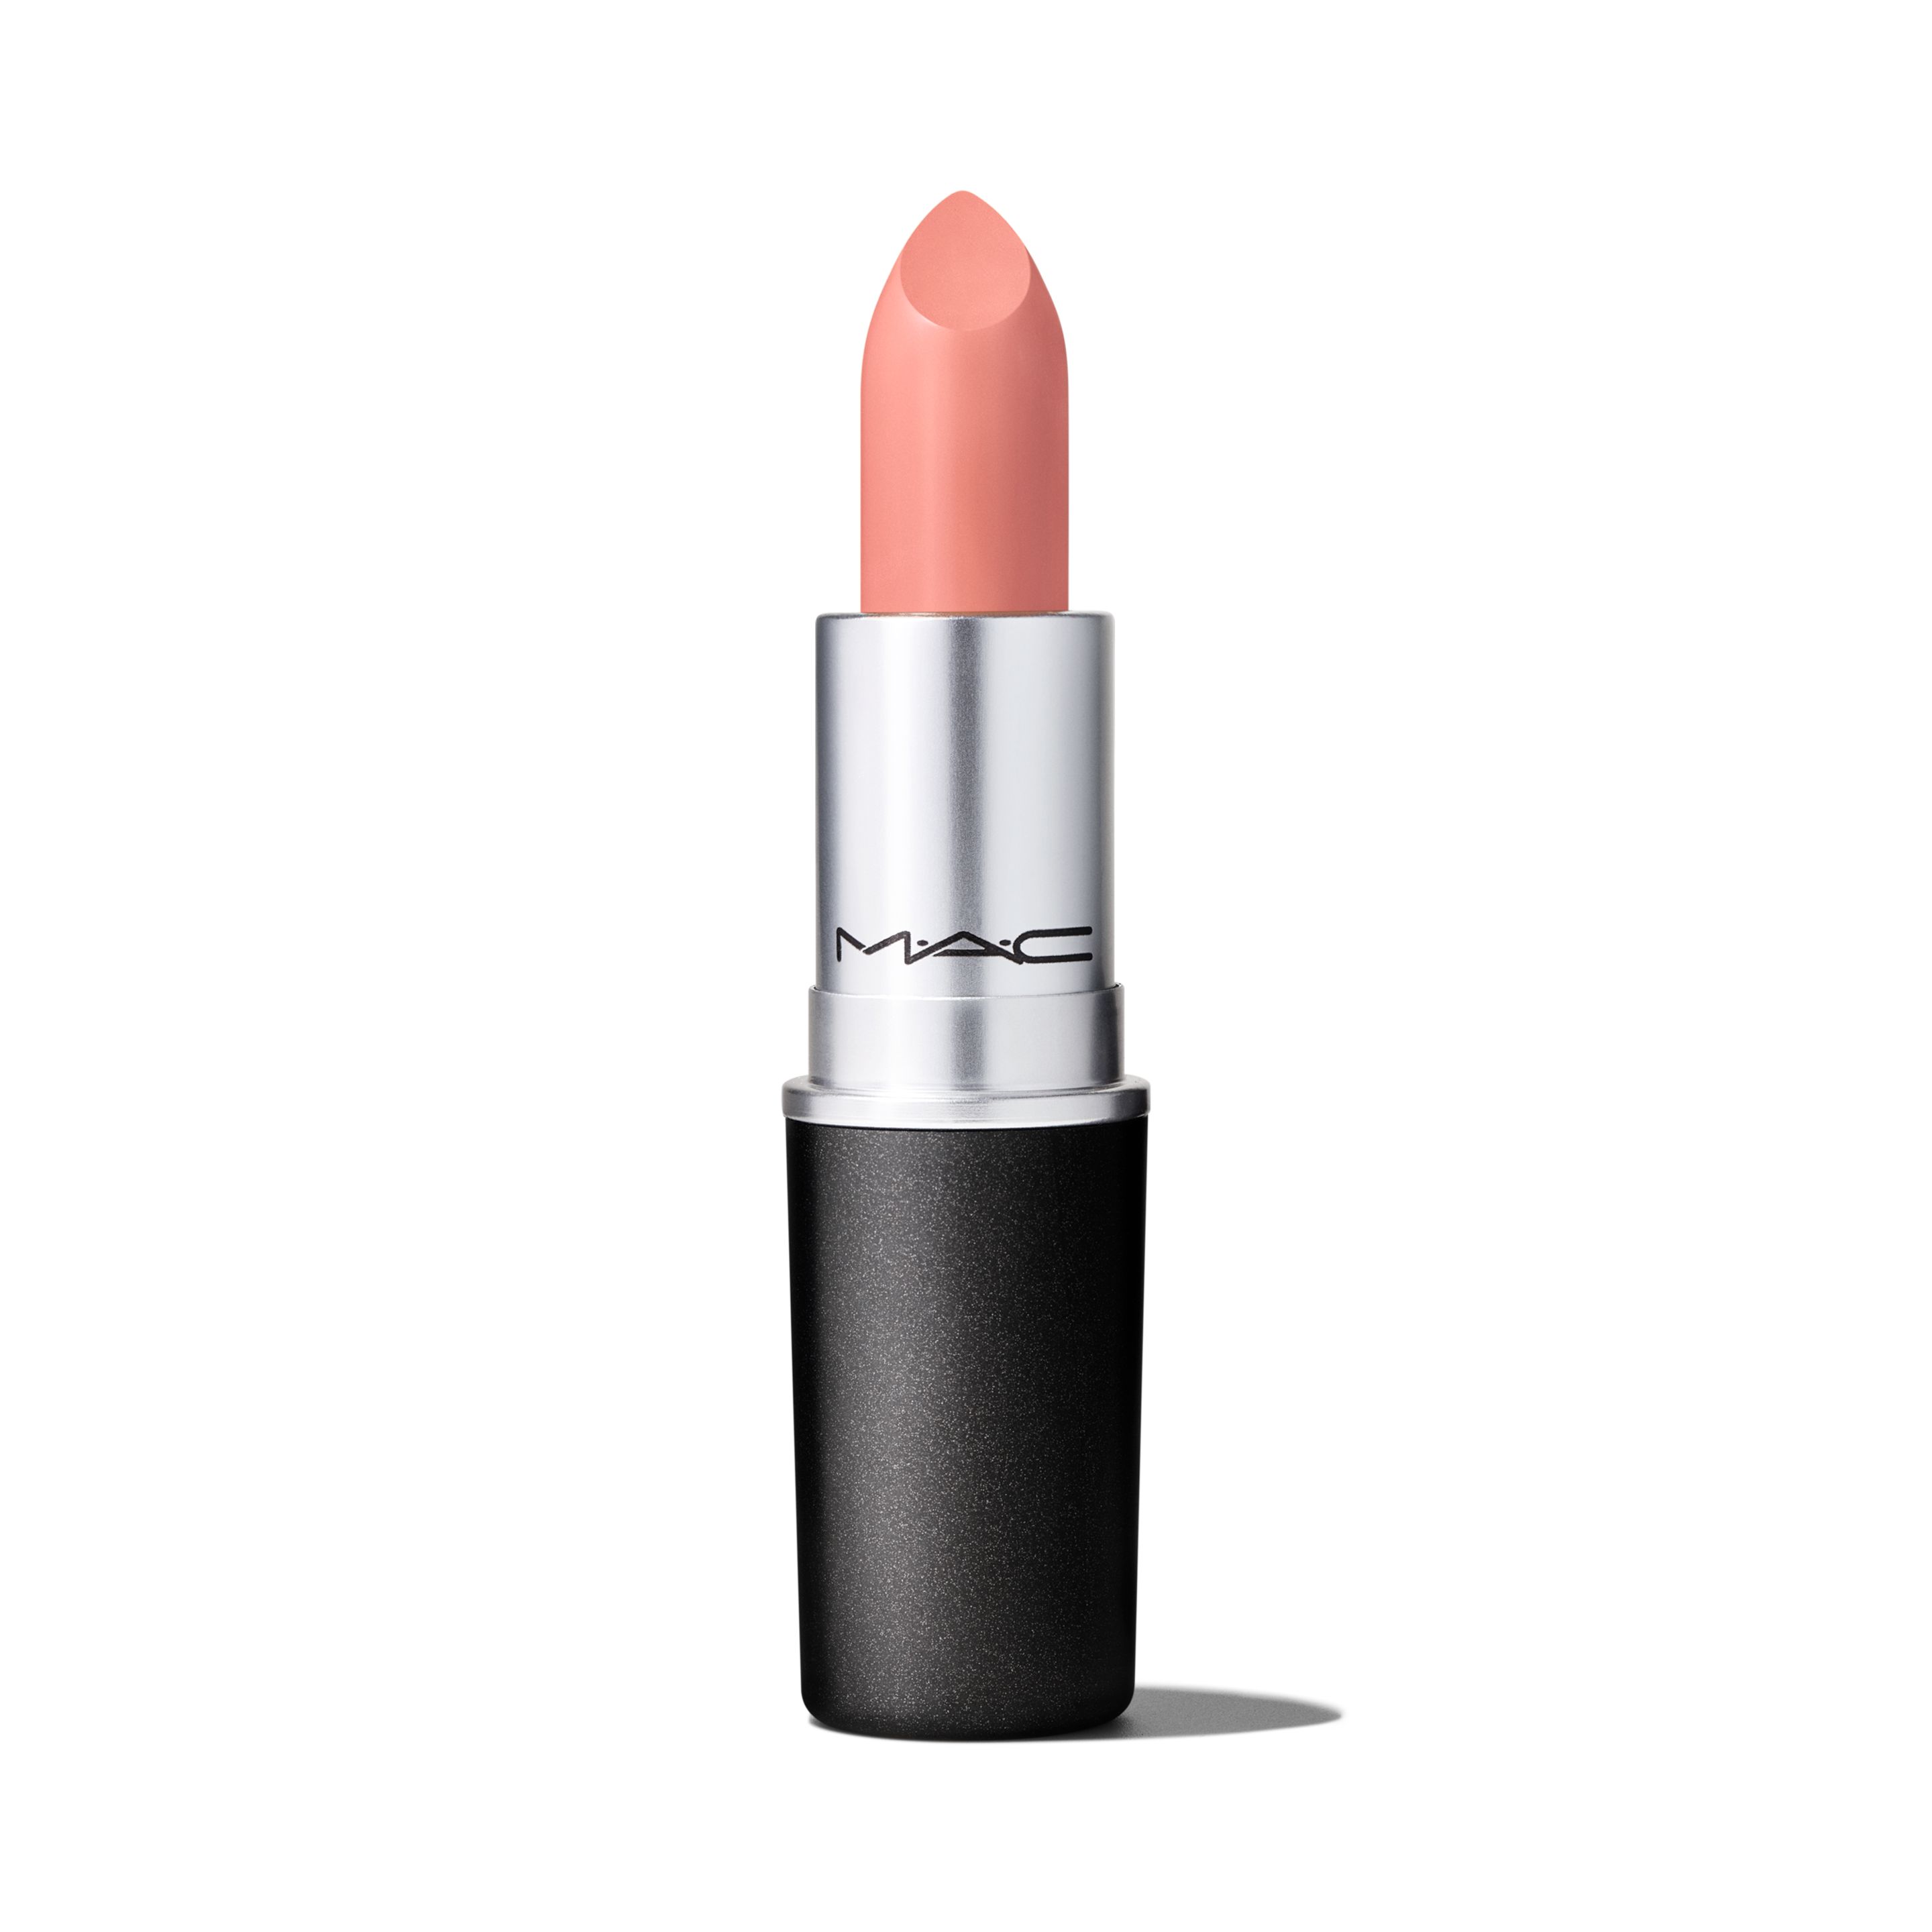 Помада для губ MAC Cosmetics Satin Lipstick кремовая, тон Myth, 3 г помада mac cosmetics satin lipstick rebel 3 г